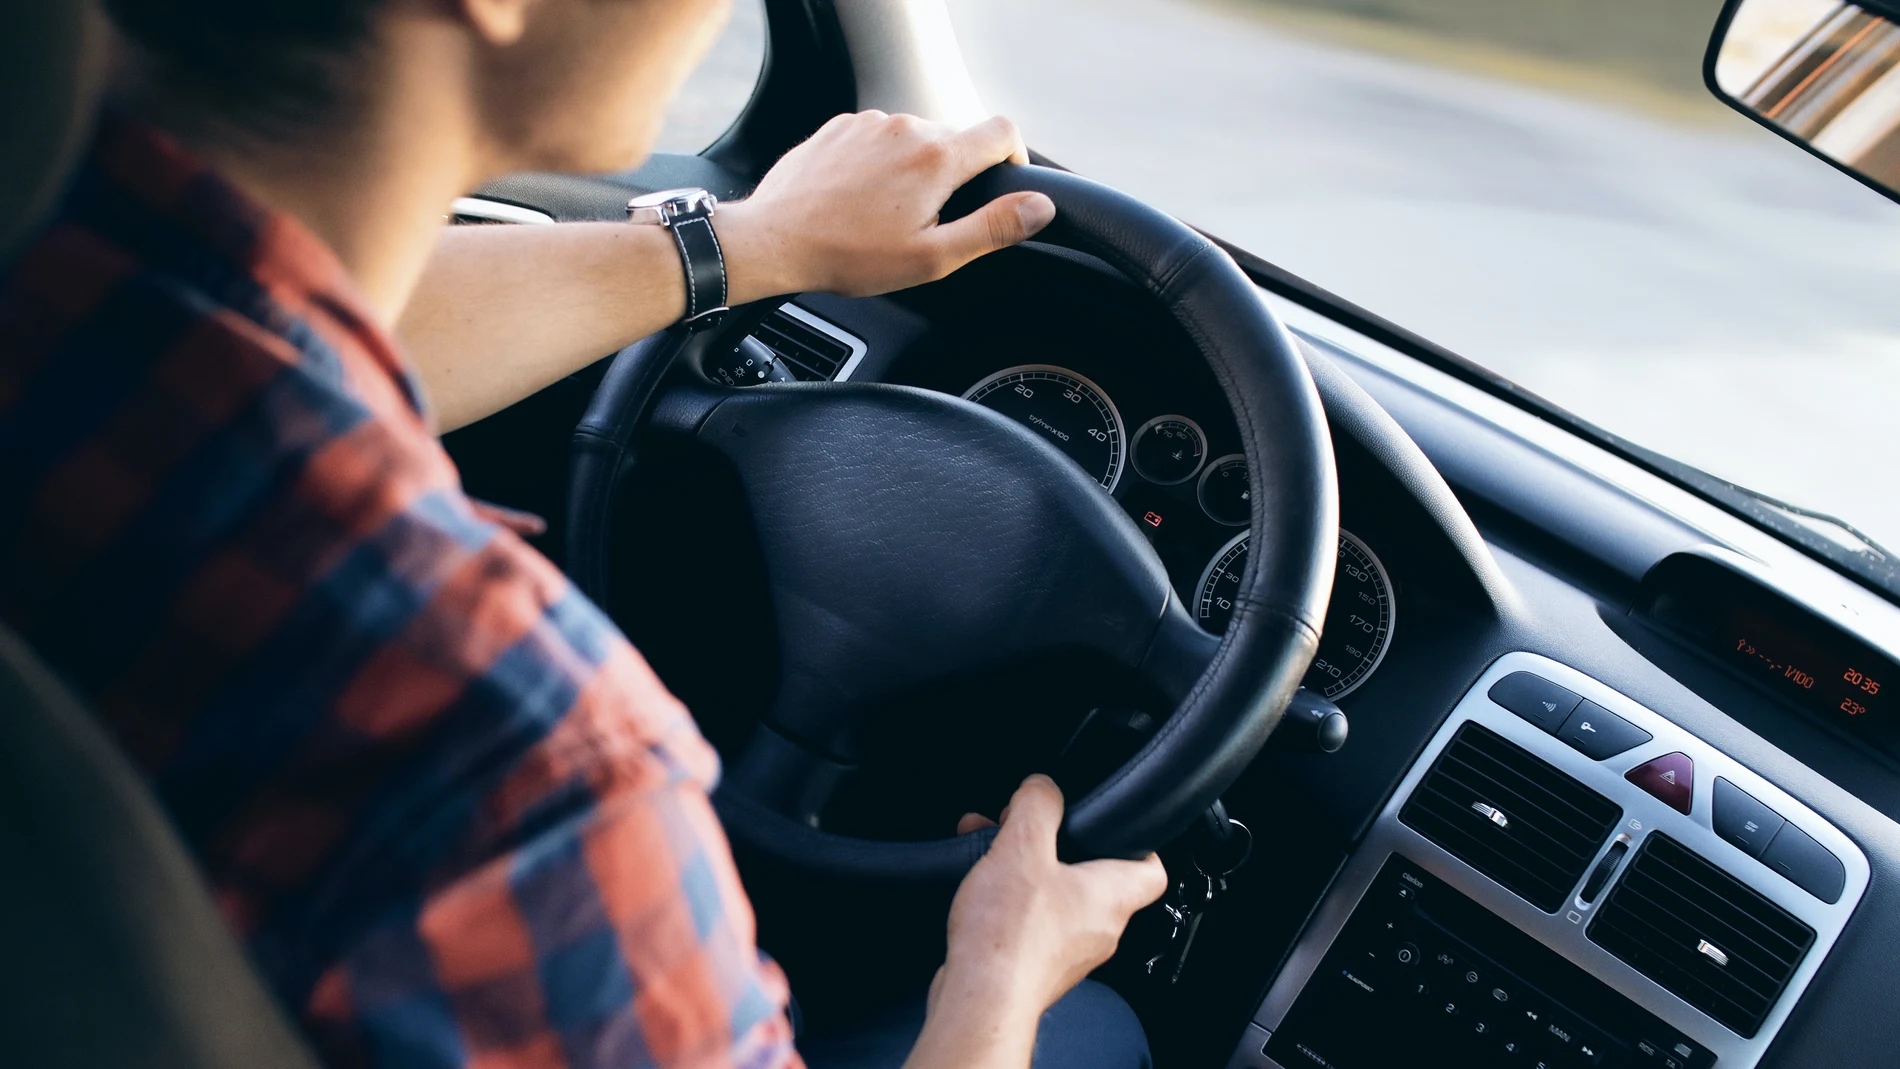 Uno de los mayores peligros de la carretera son las distracciones al volante